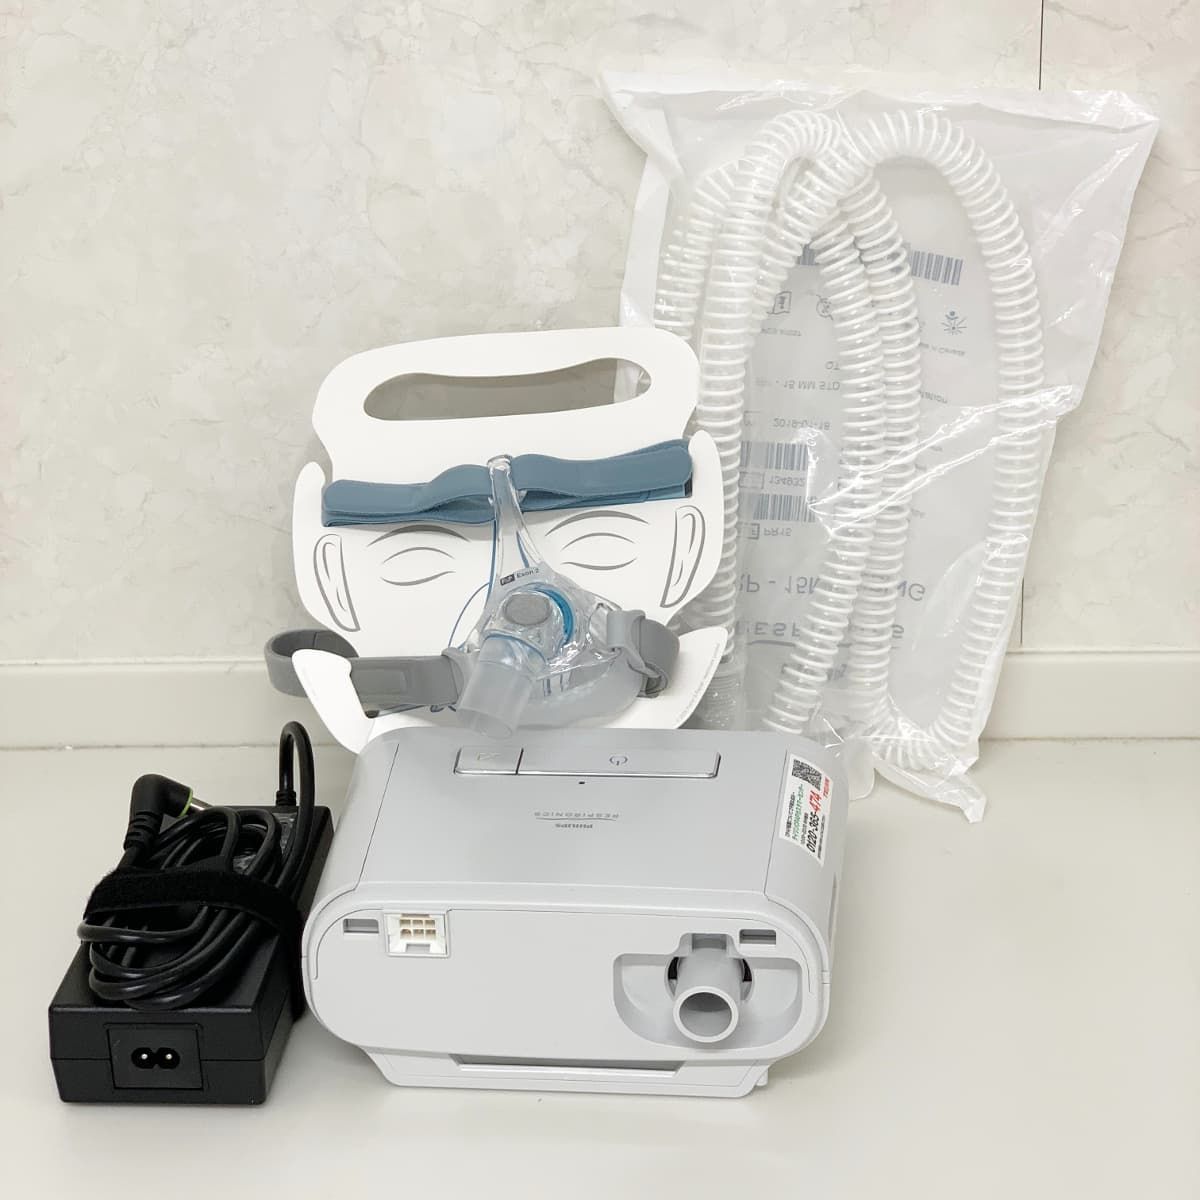 持続陽圧呼吸装置（CPAP）の写真